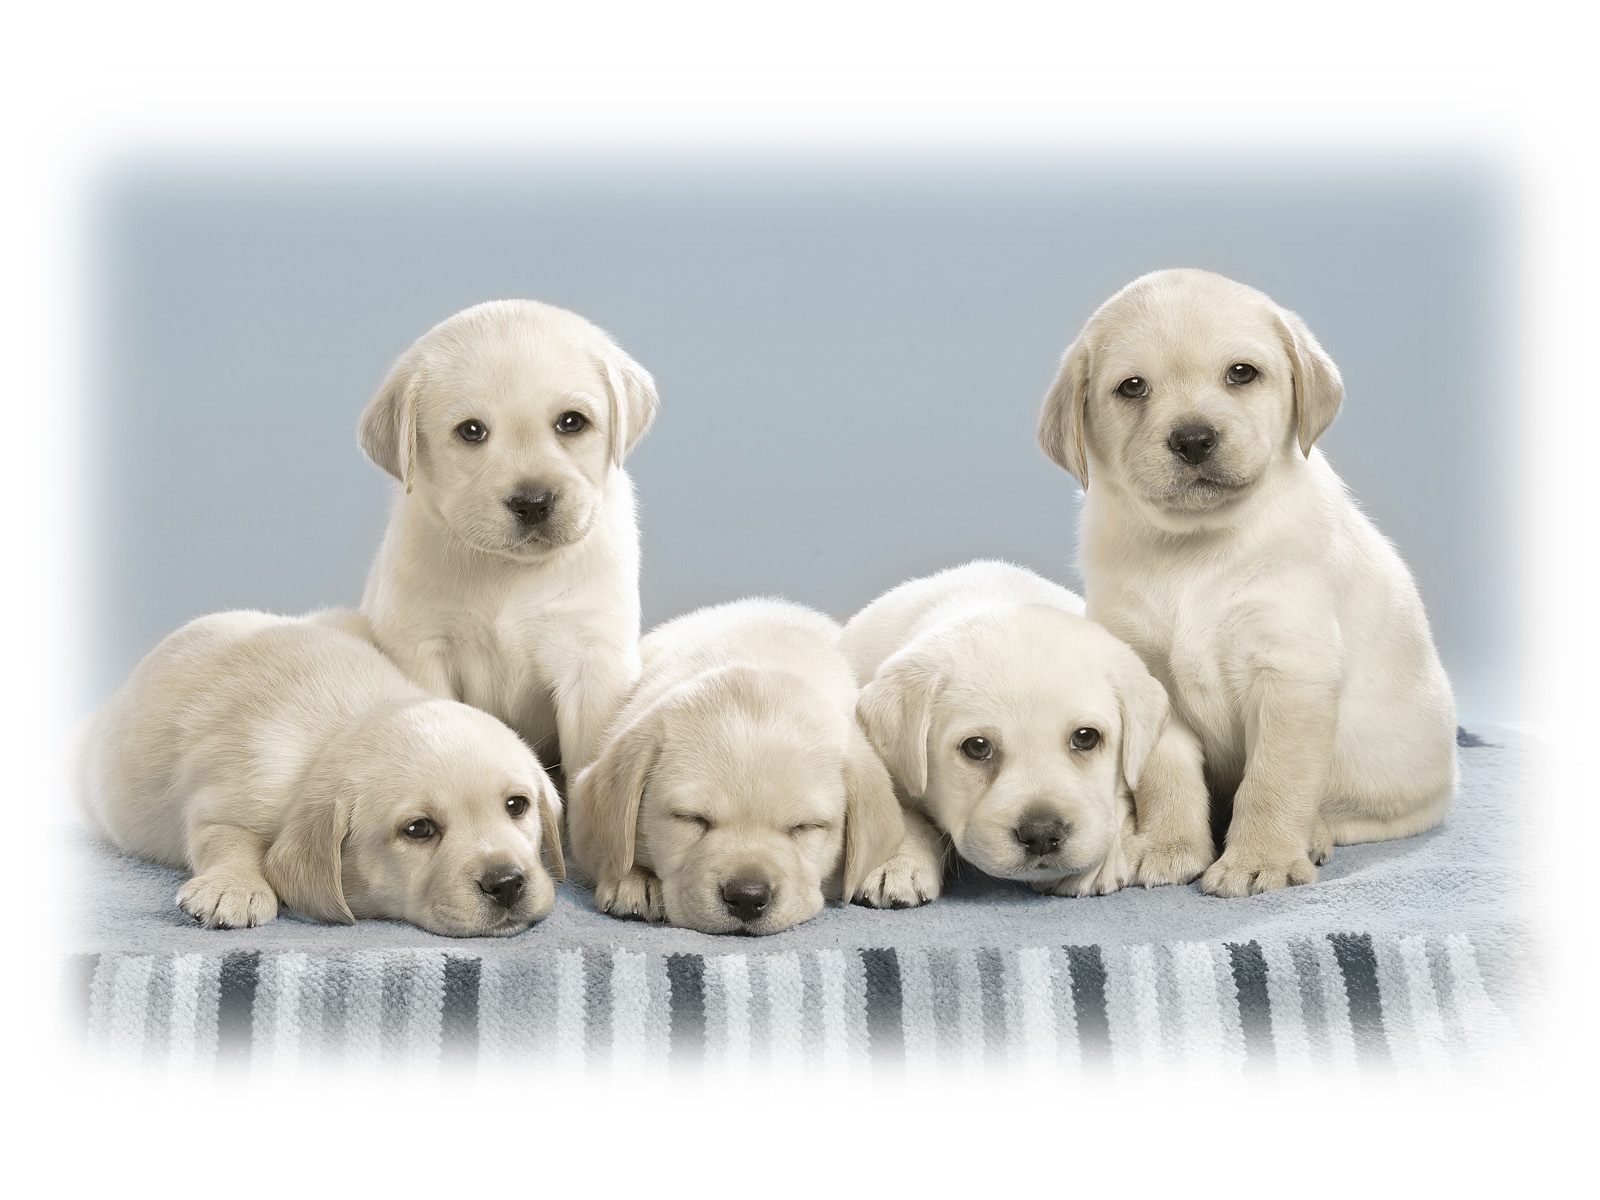 Cute Puppies9933912661 - Cute Puppies - Pups, Puppies, Cute